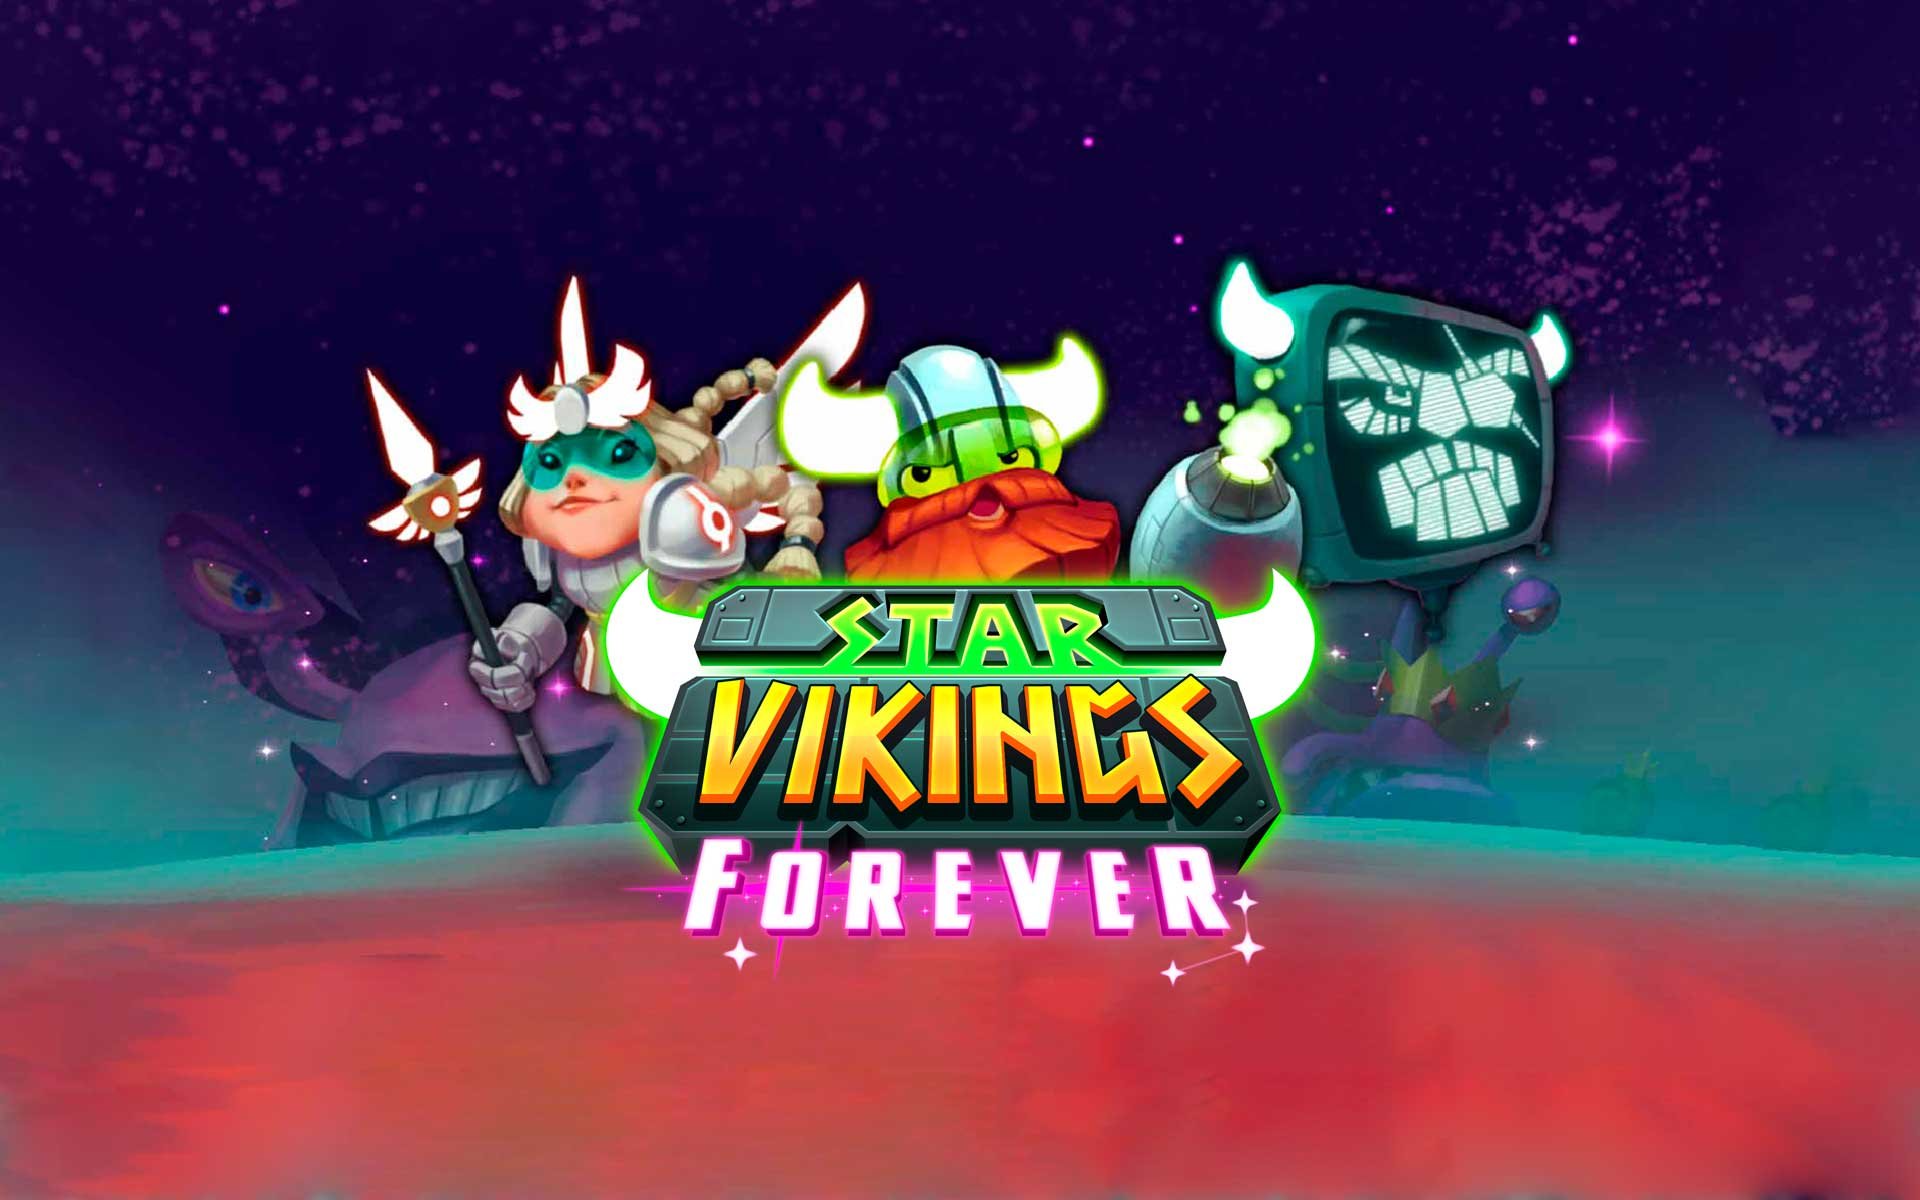 Star Vikings Forever por R$ 19.99